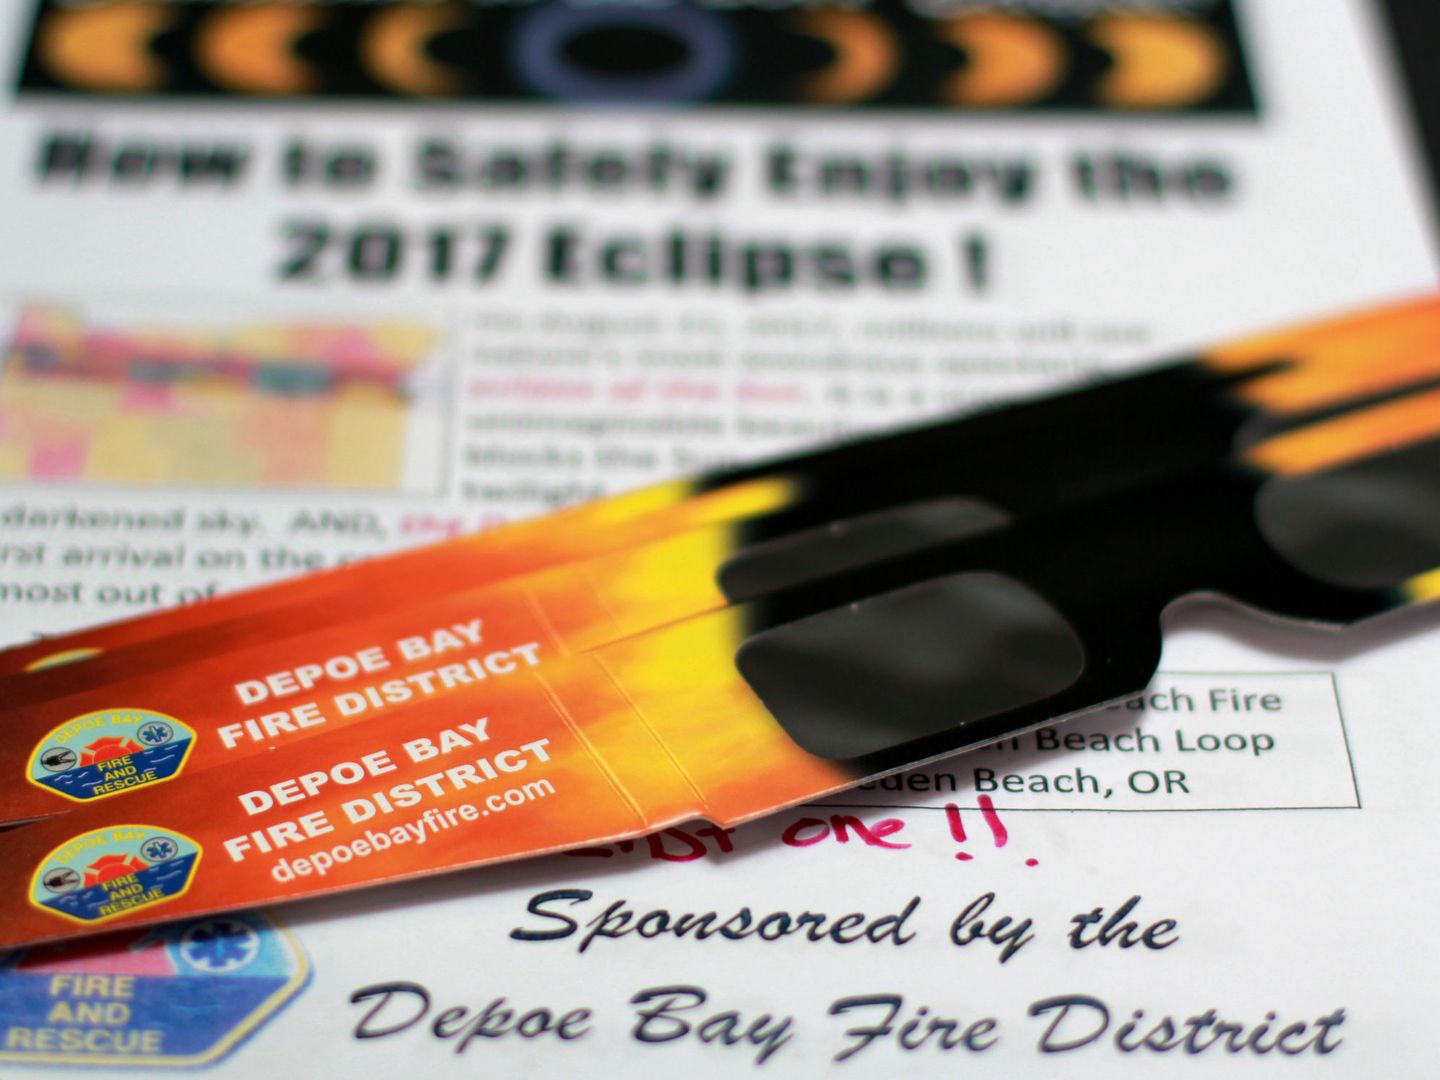 Gafas para ver el eclipse protegido (REUTERS)